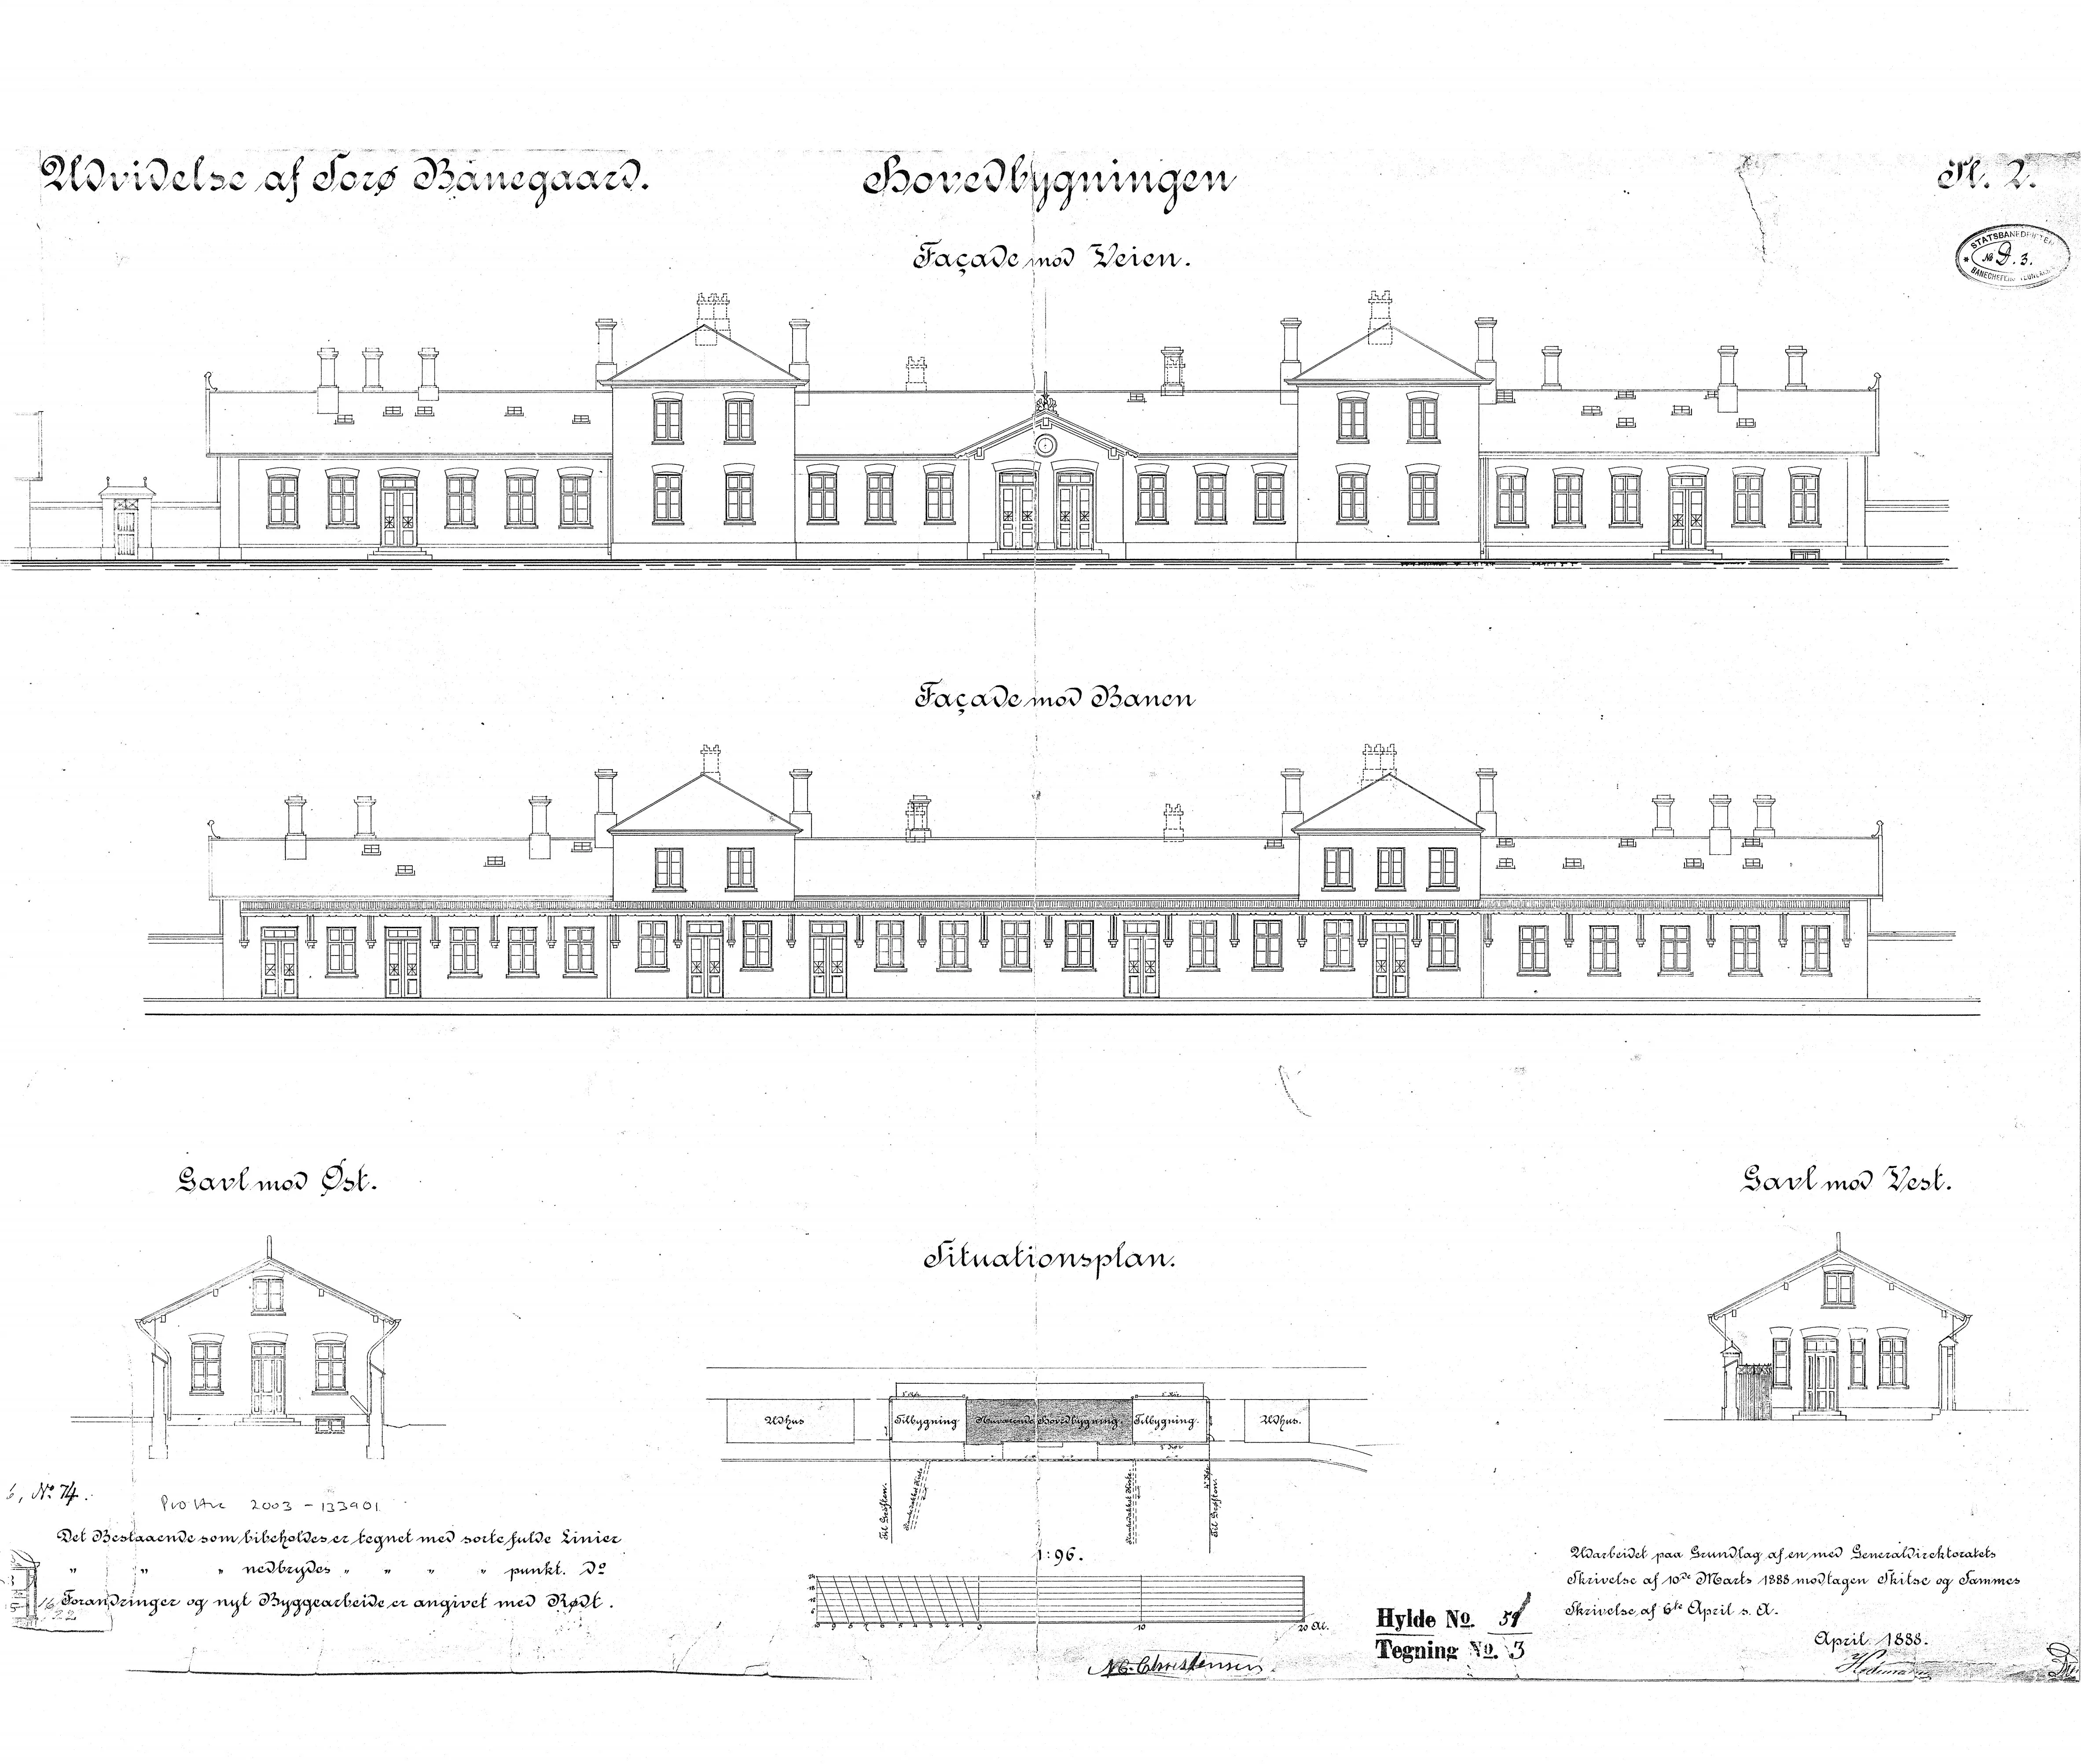 Tegning af Sorø Station - udvidelse af stationsbygning.